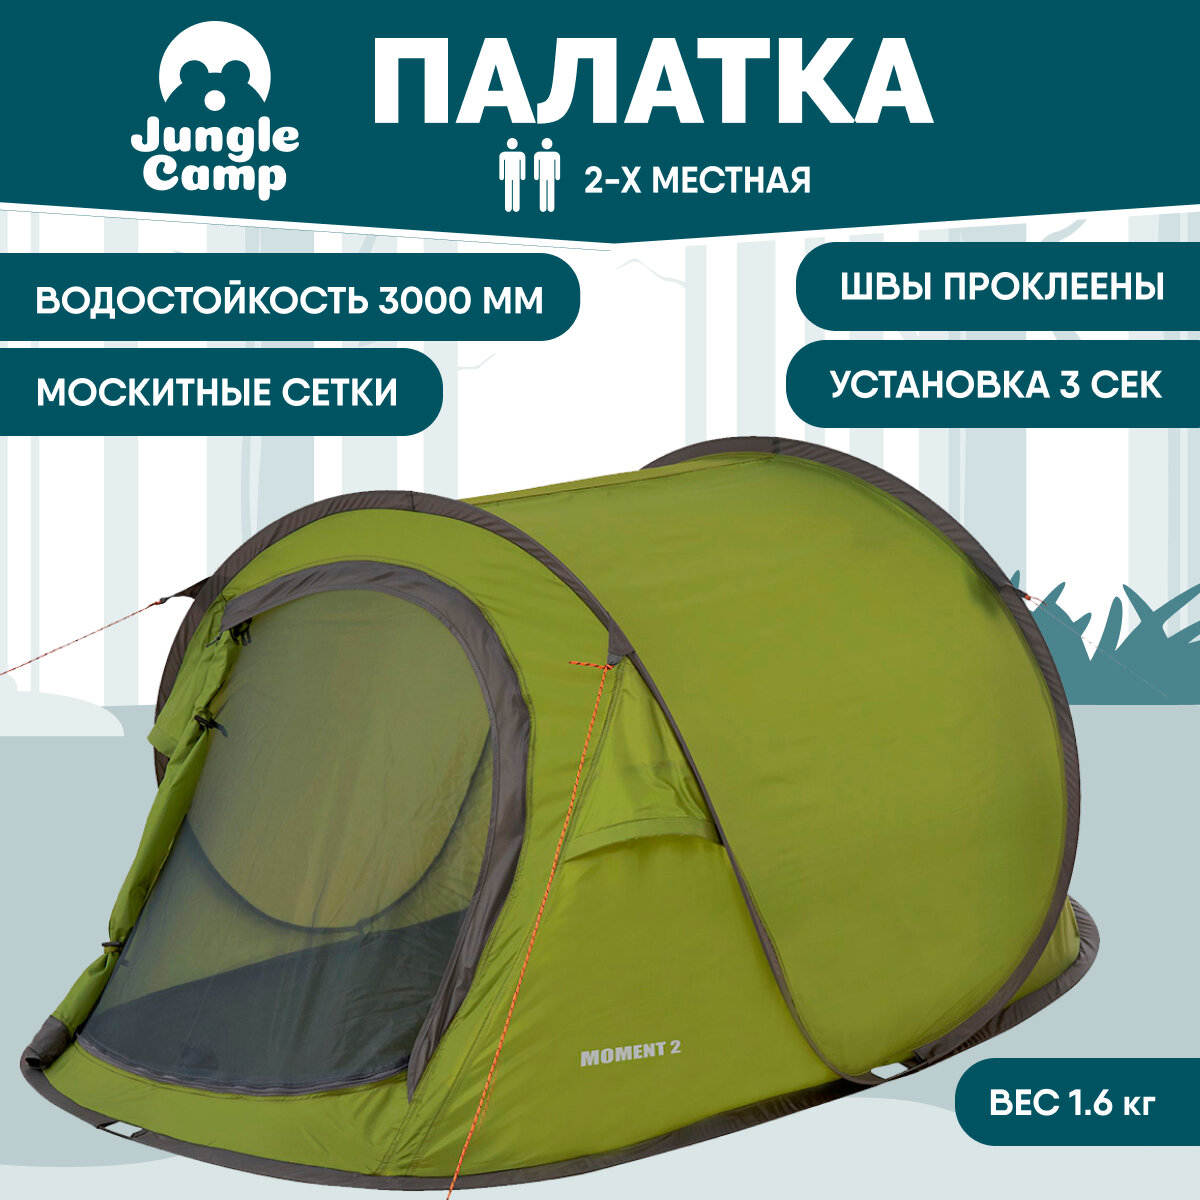 Палатка двухместная JUNGLE CAMP Moment 2, цвет: зеленый